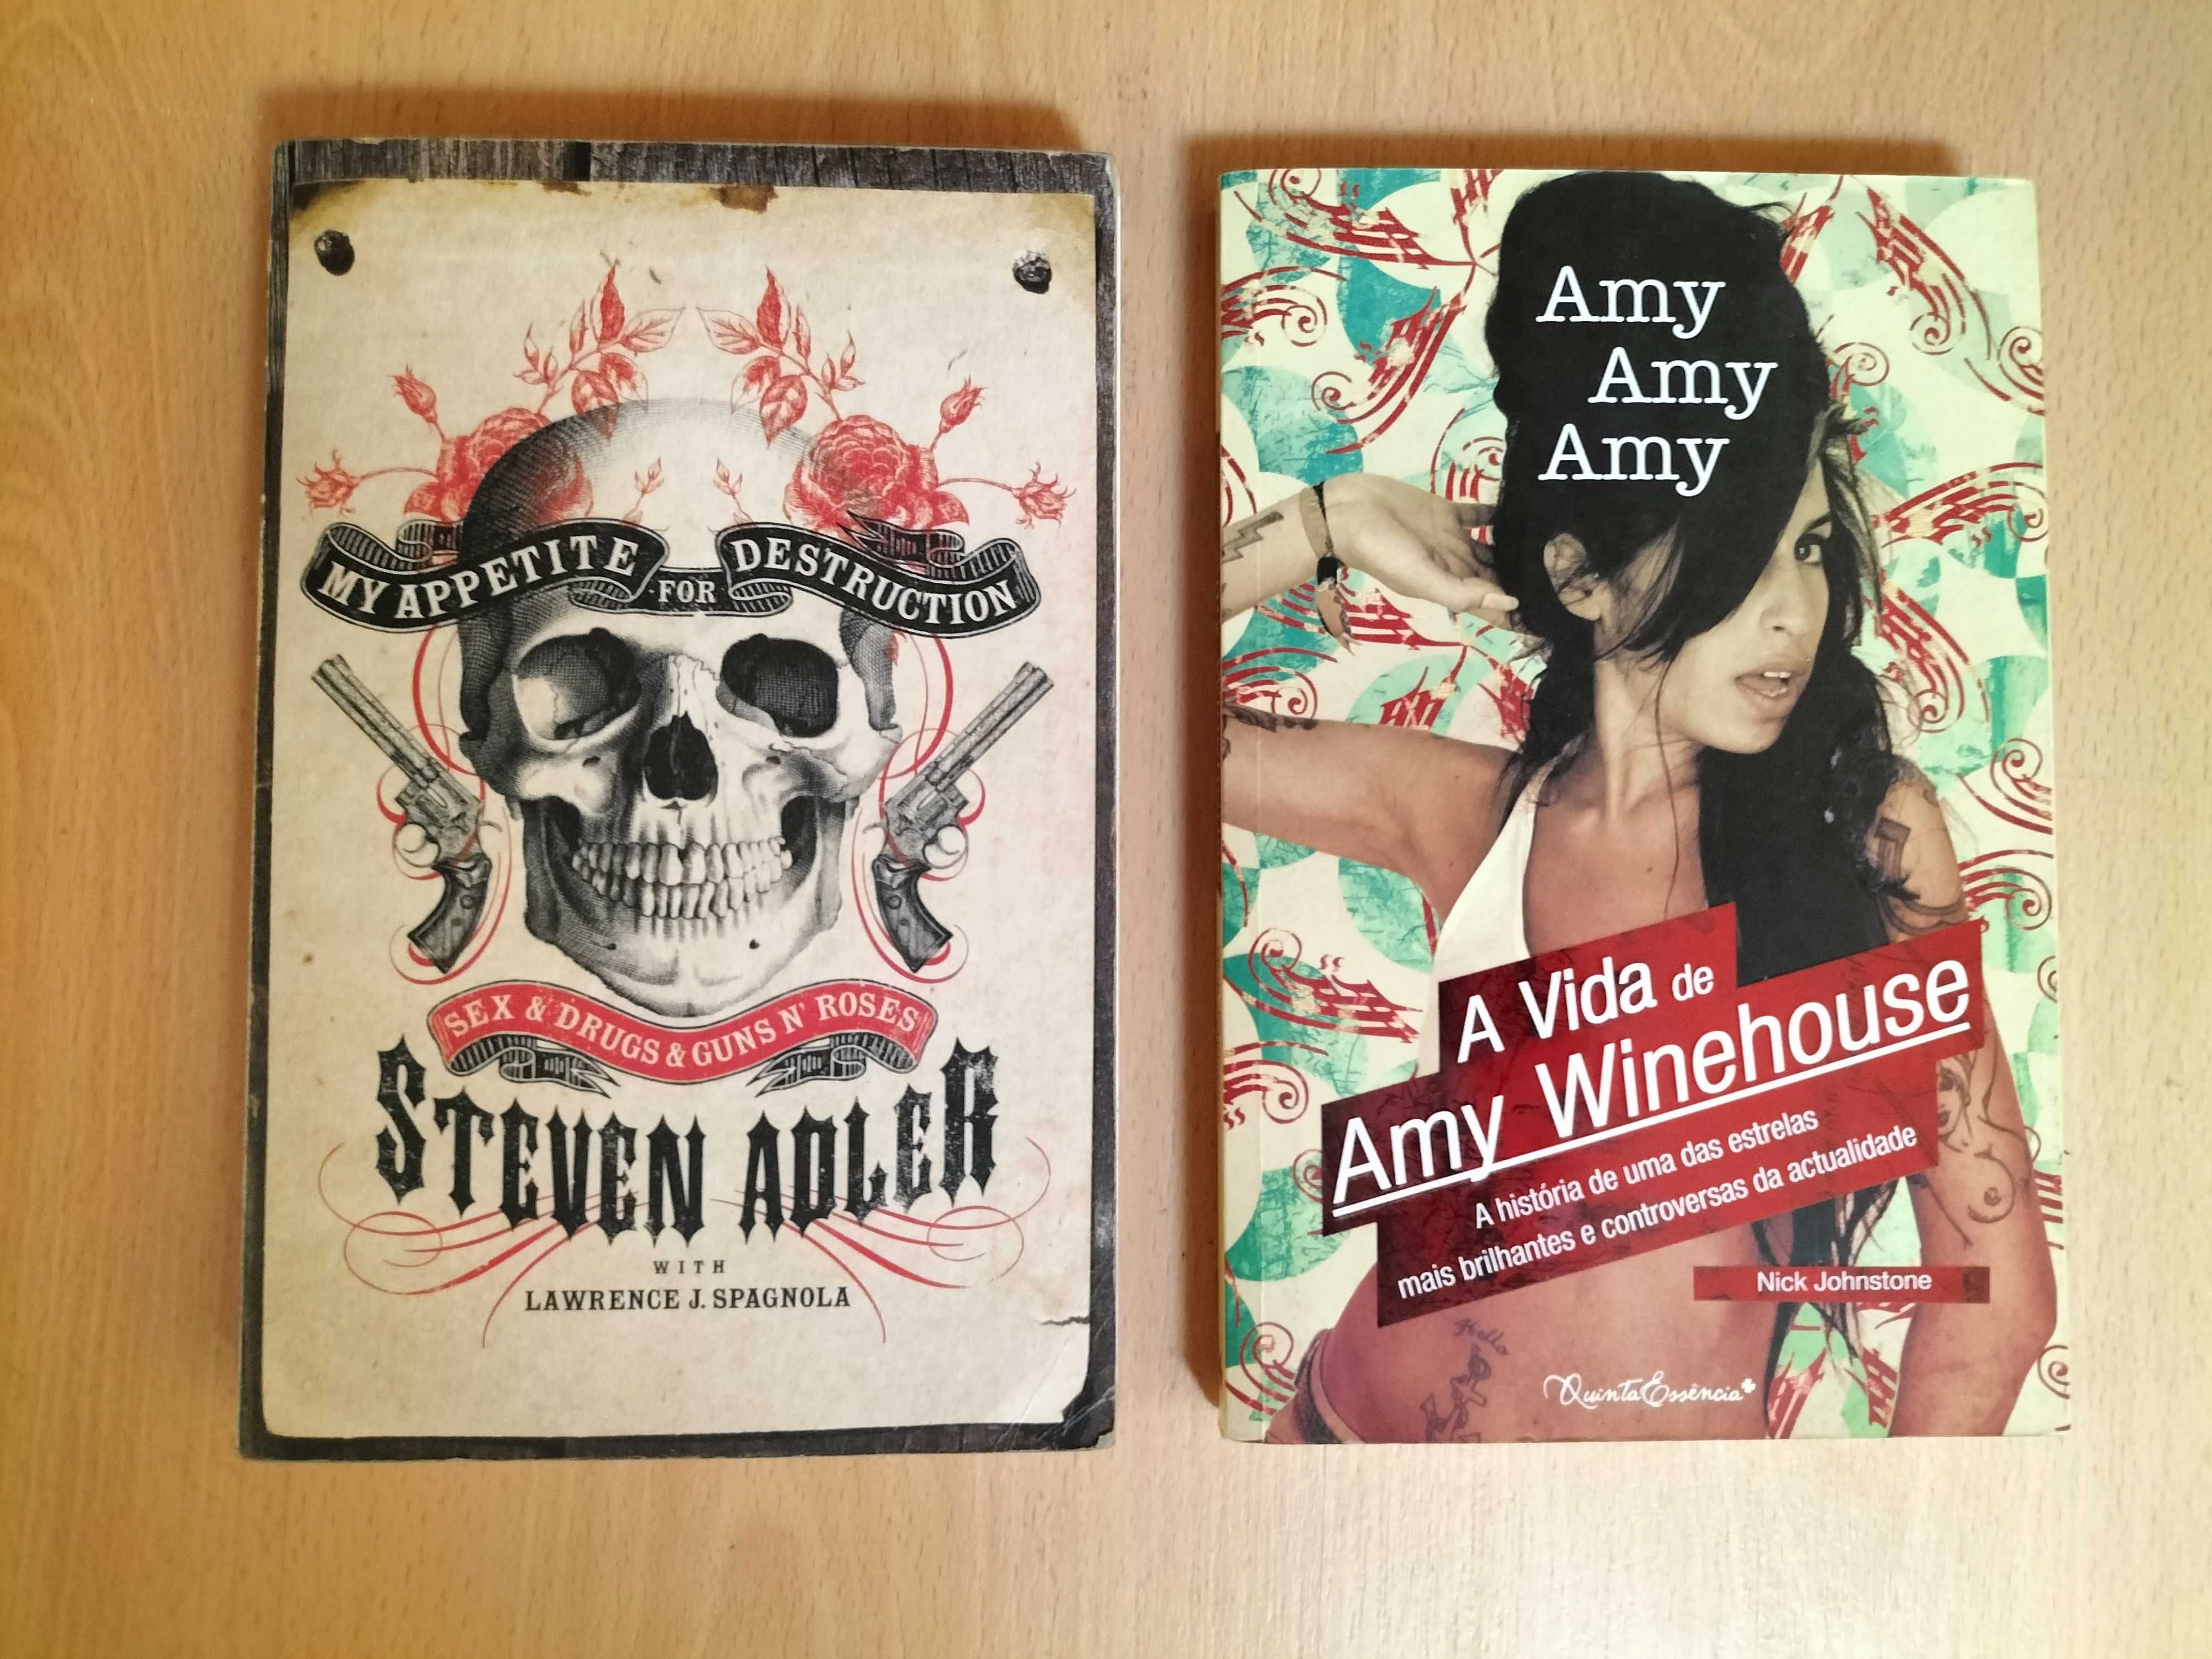 Livros Steven Adler e Amy Winehouse